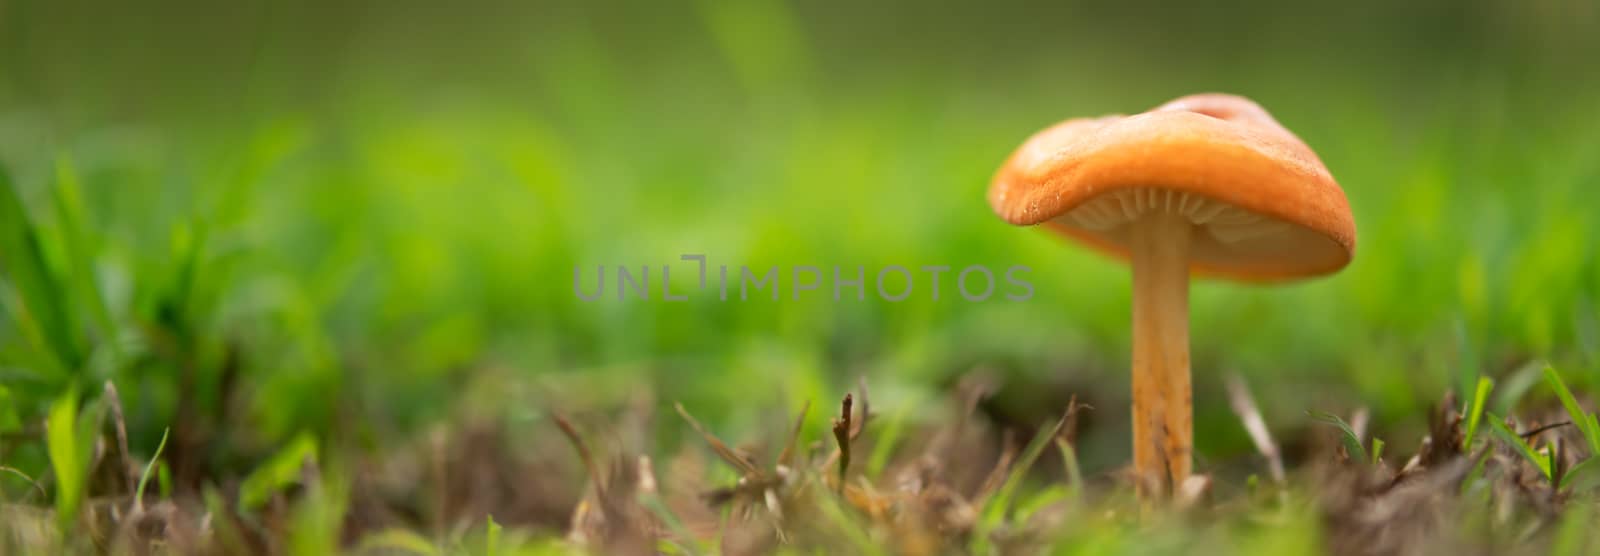 Orange mushroom landscape panorama by sherj